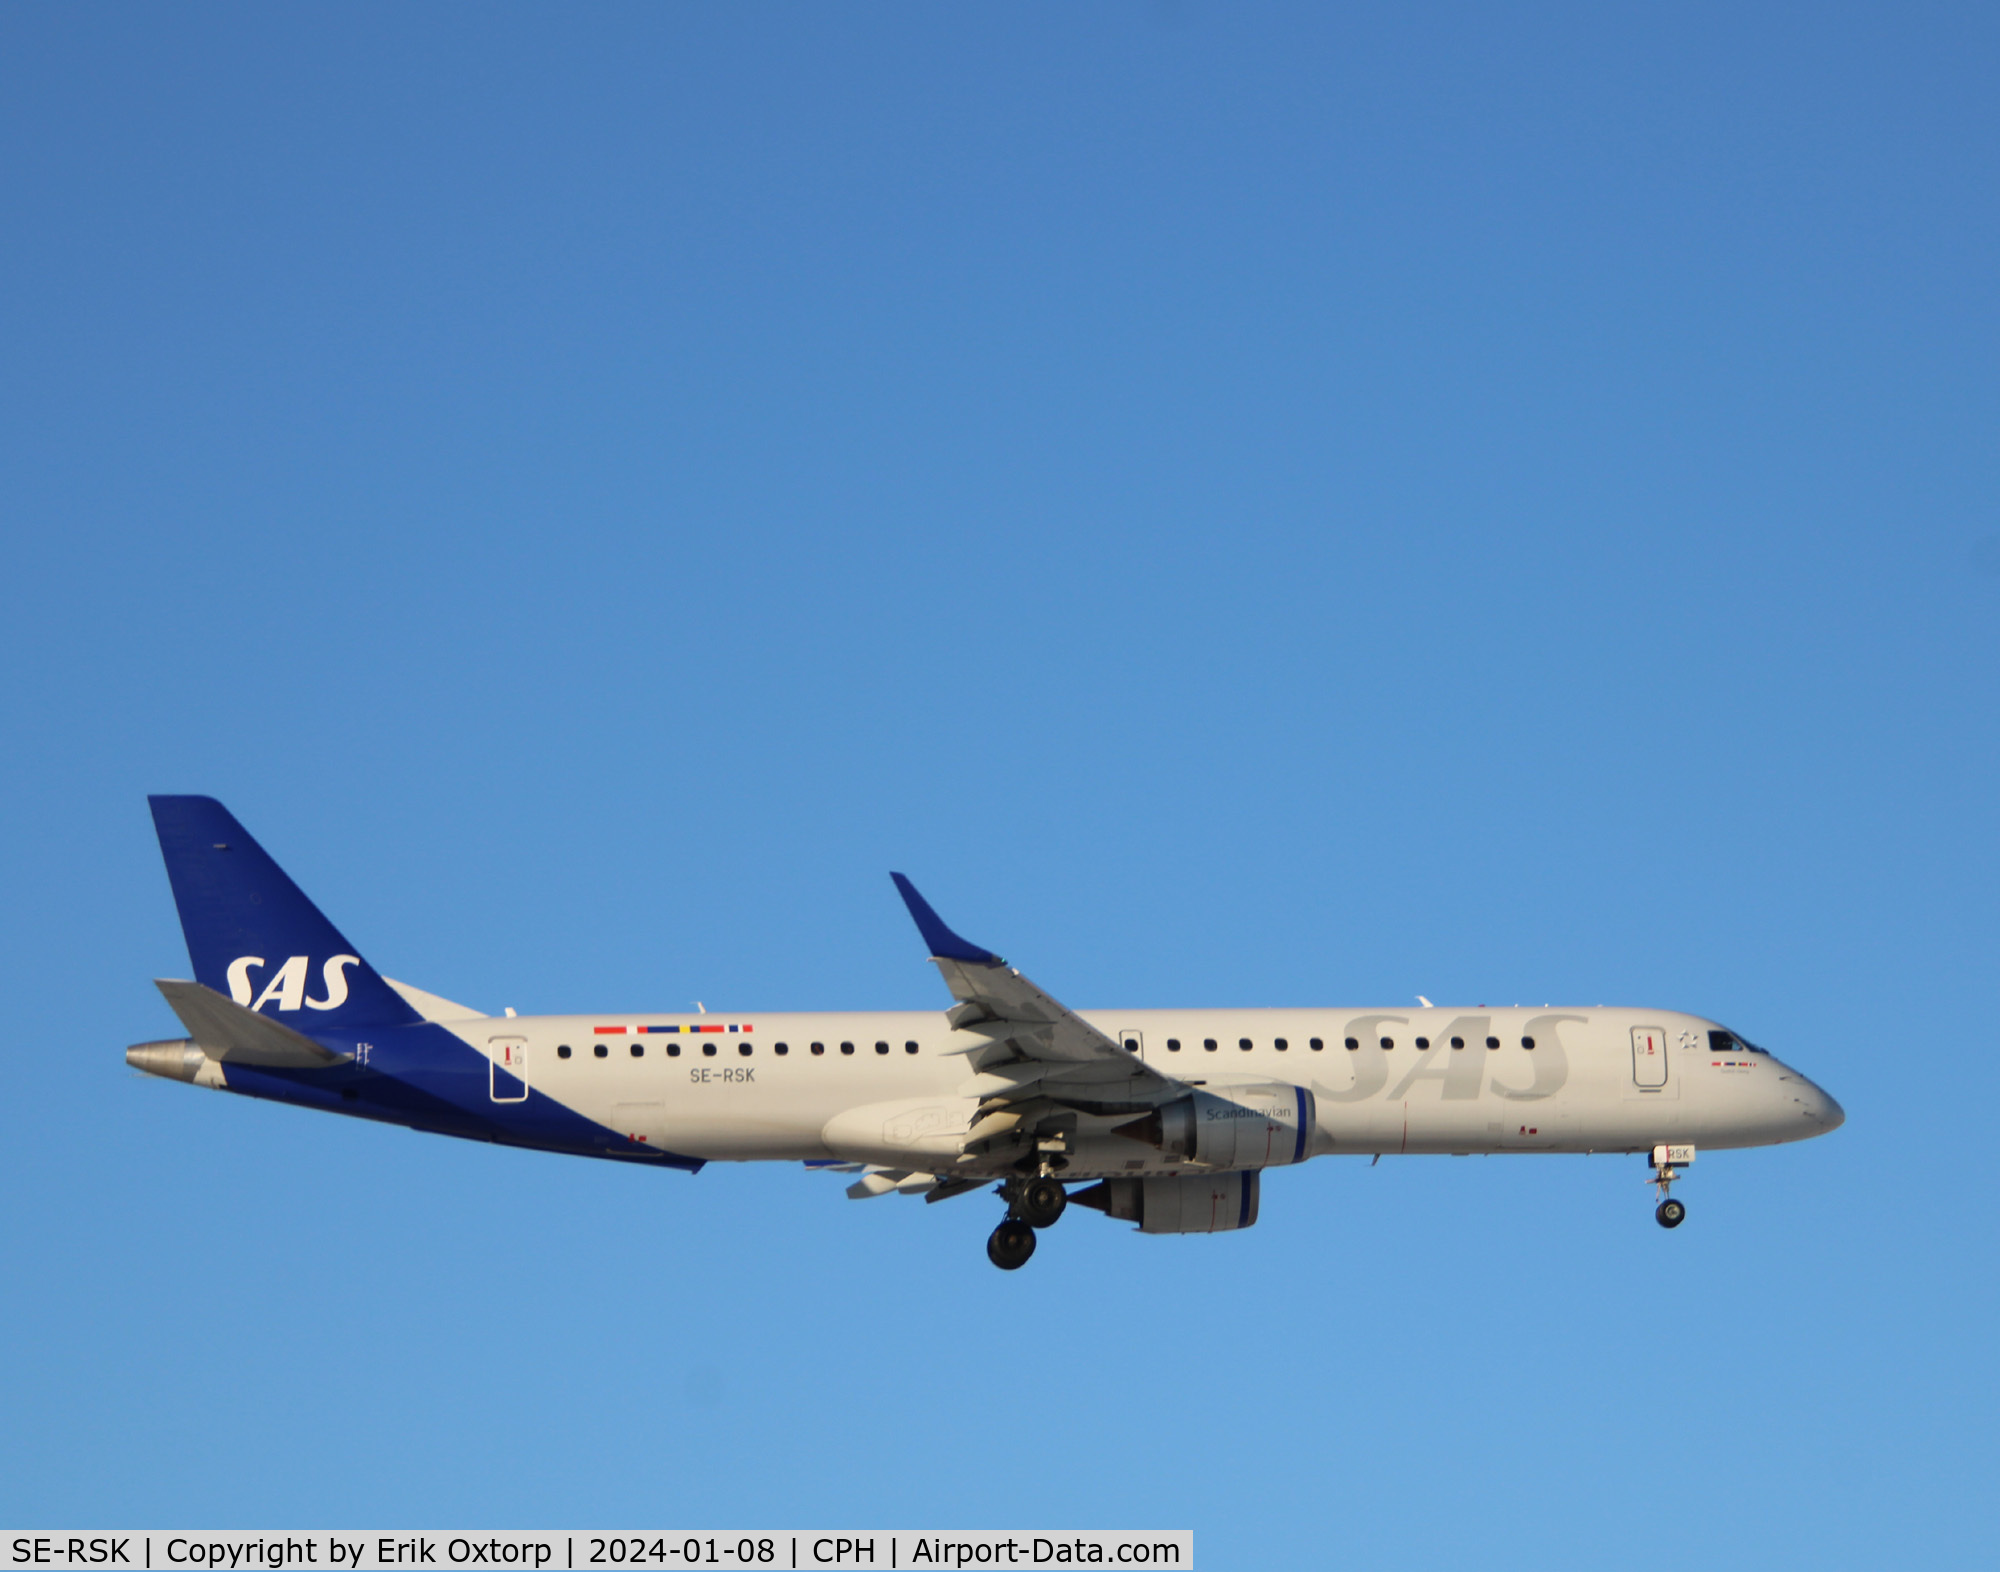 SE-RSK, 2007 Embraer 195LR (ERJ-190-200LR) C/N 19000120, SE-RSK landing rw 04L